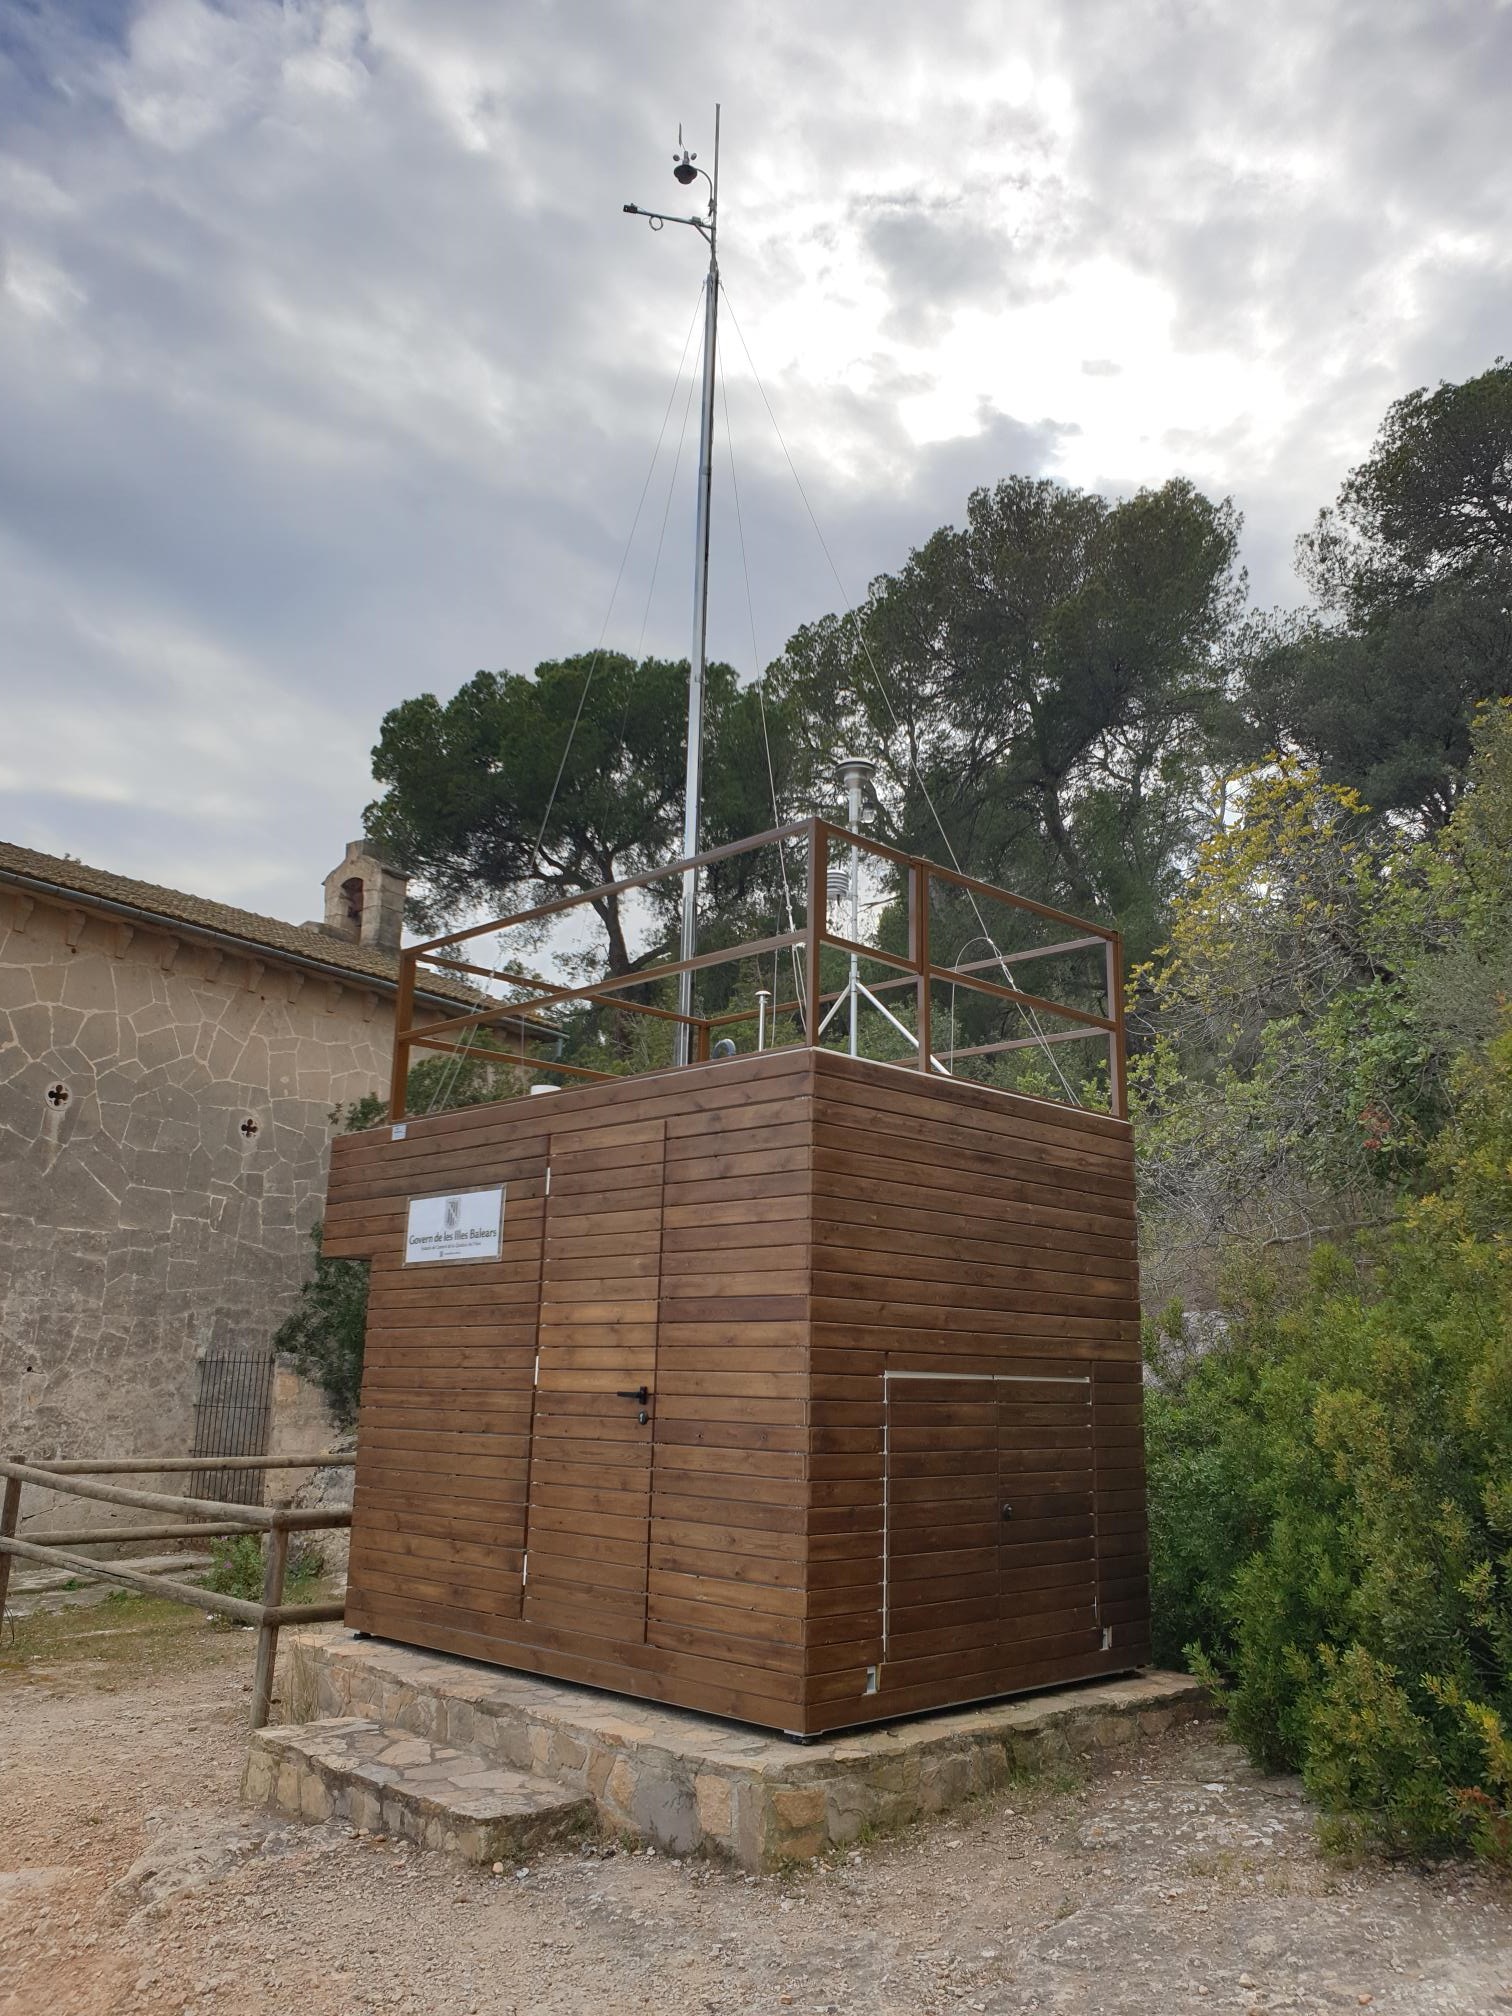 Estació de Parc de Bellver - Palma de Mallorca (Mallorca) - Xarxa balear de vigilància i control de la qualitat de l'aire.